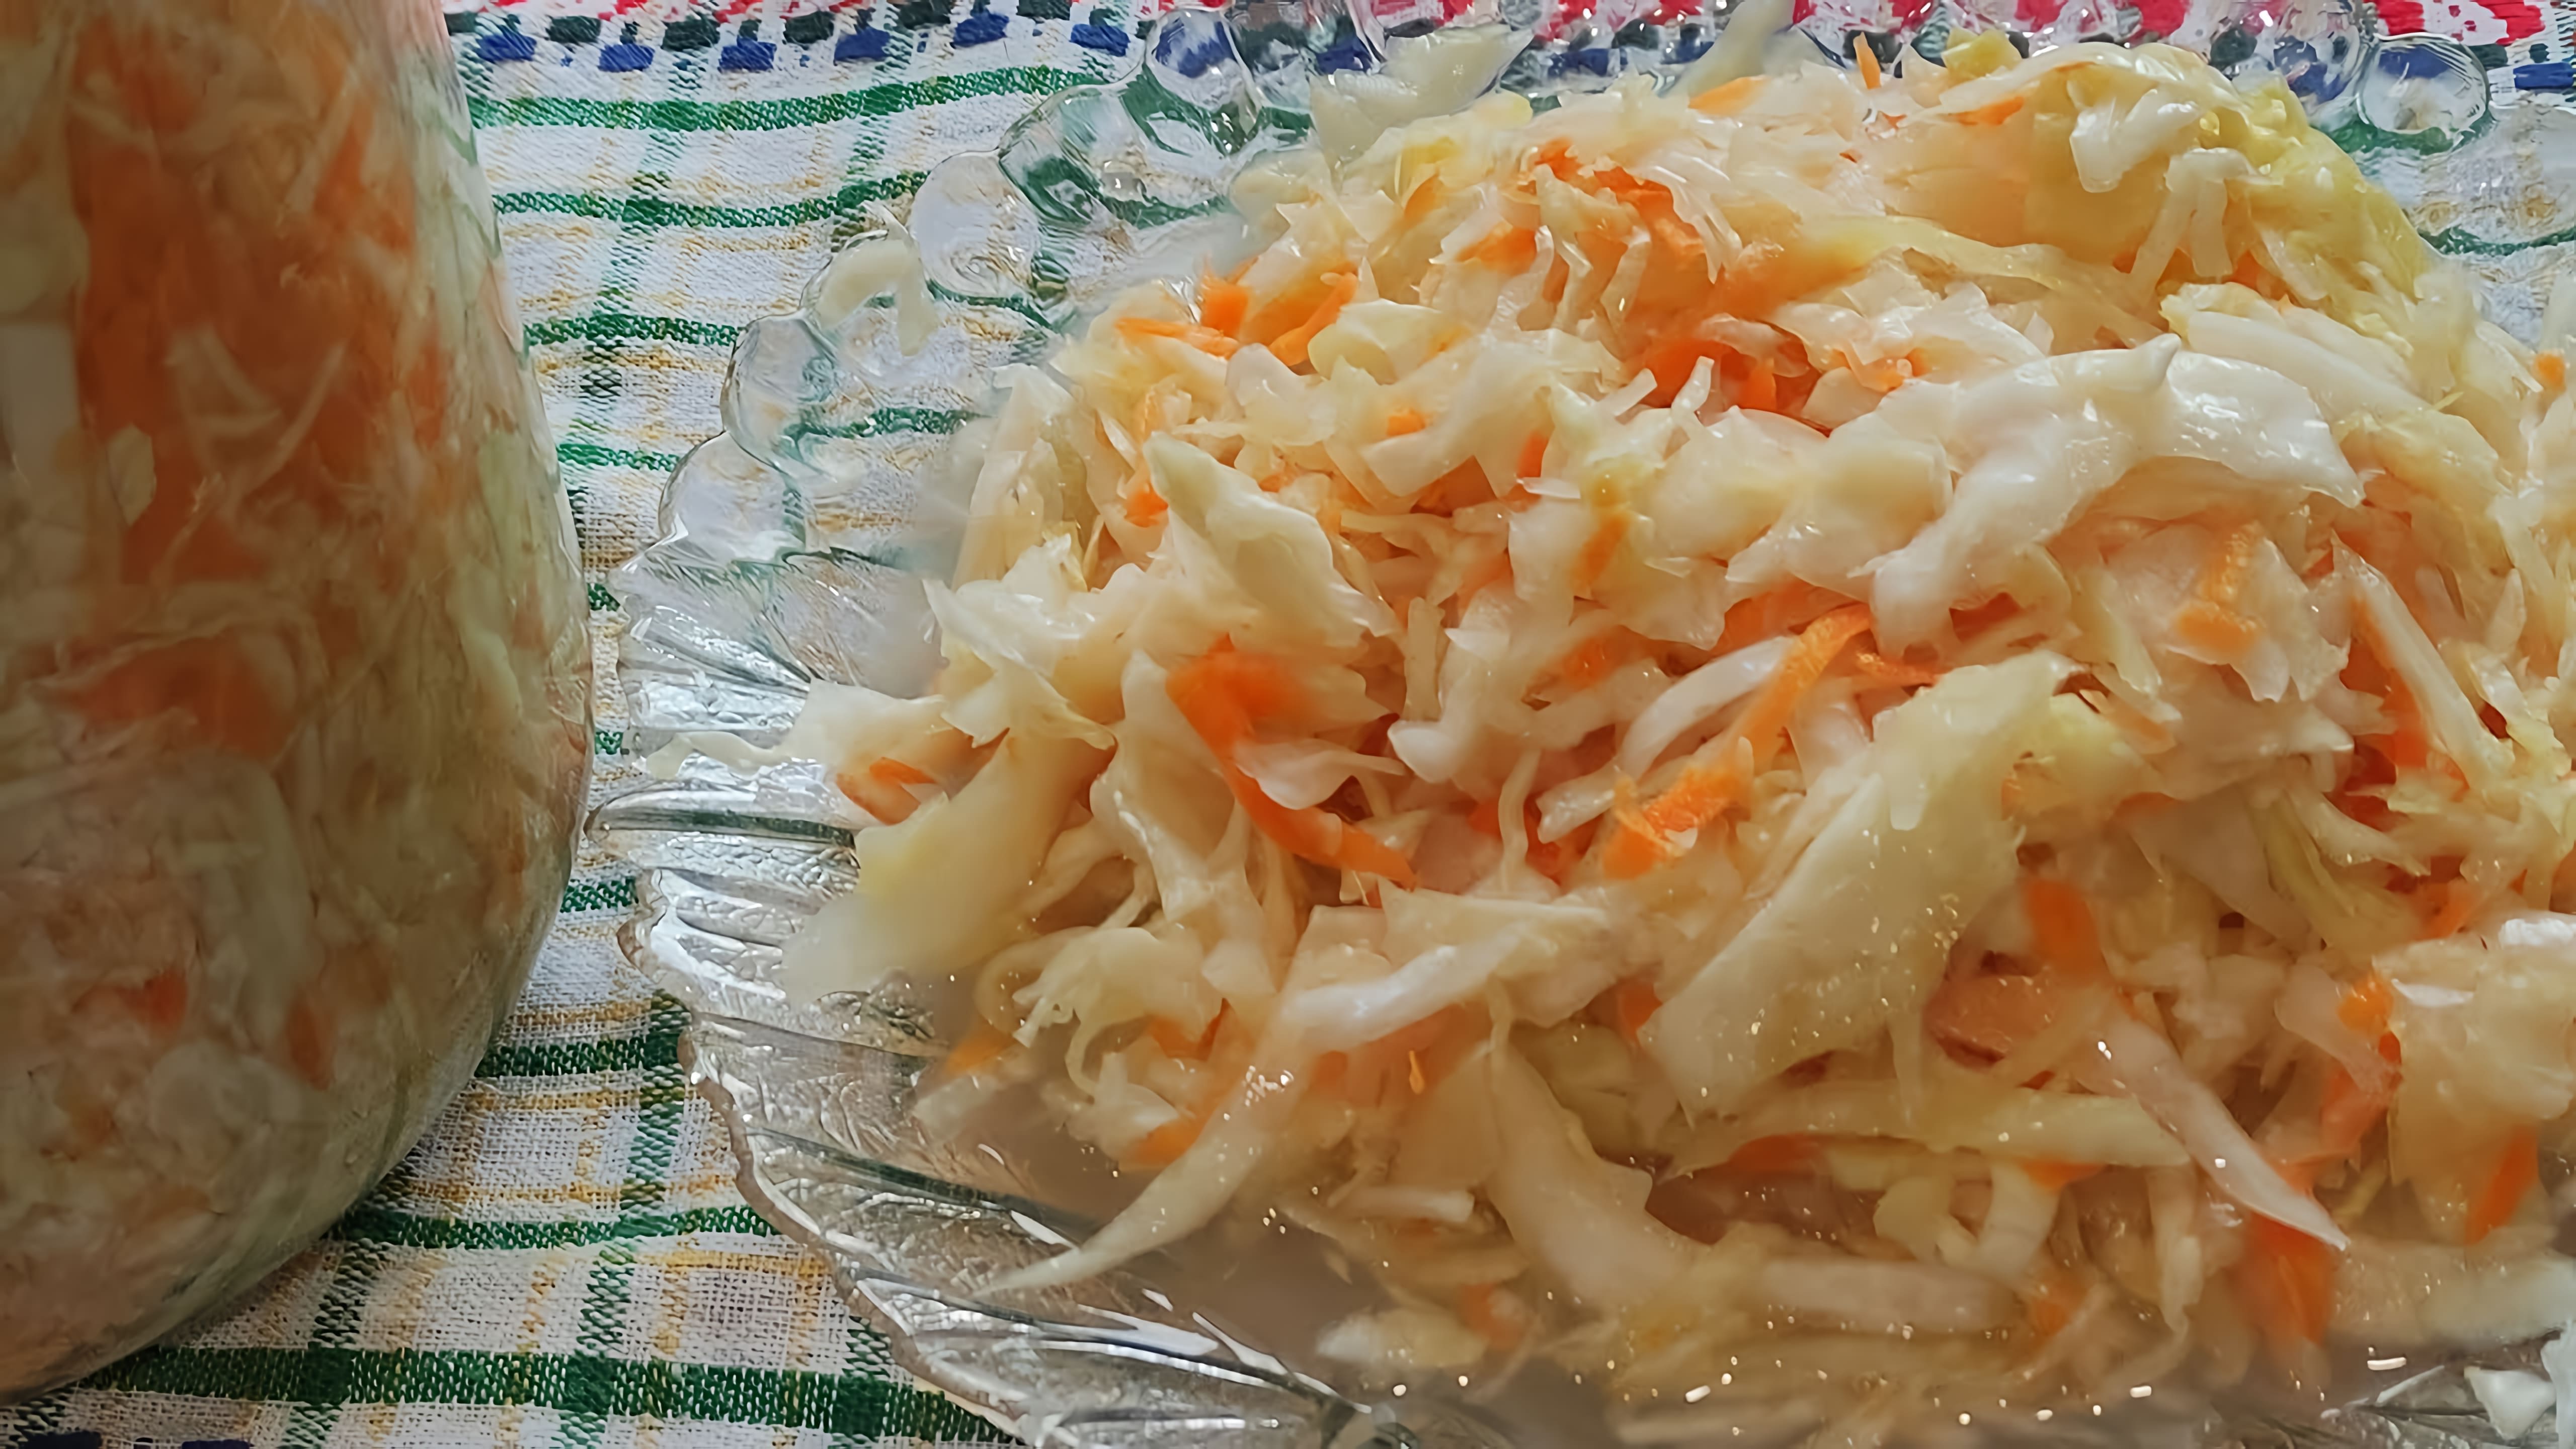 Рецепт на одну 3 литровую банку: капуста 2, 5-3 кг морковь крупная 1 шт. соль 2 ст. л. с верхом. 